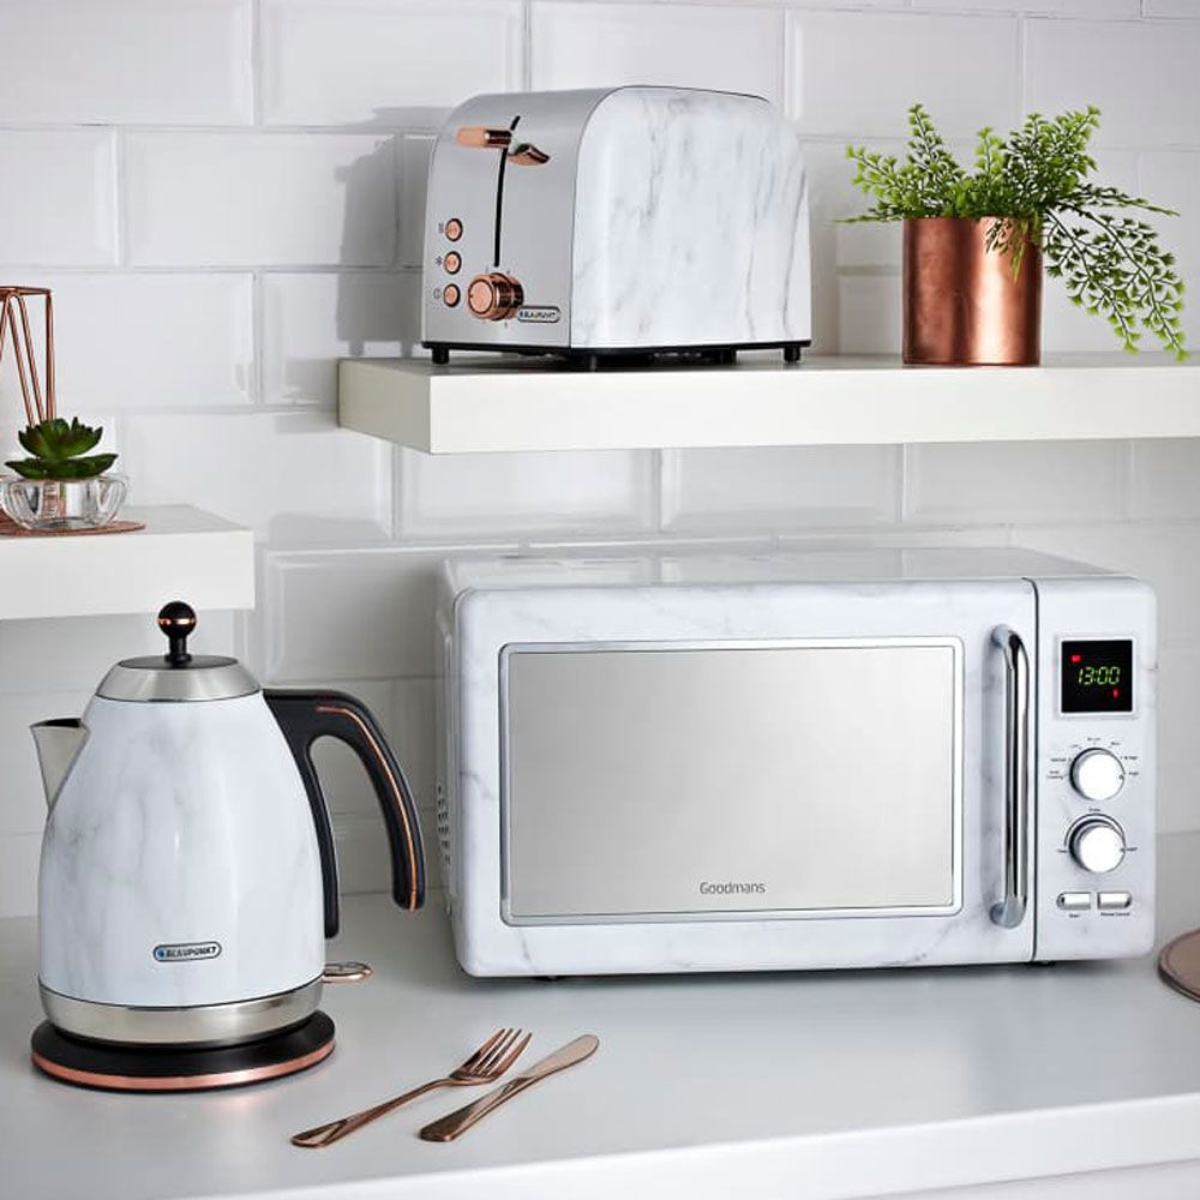 wasserkocher mikrowelle und toaster in weiß und kupferfarben auf weißer theke